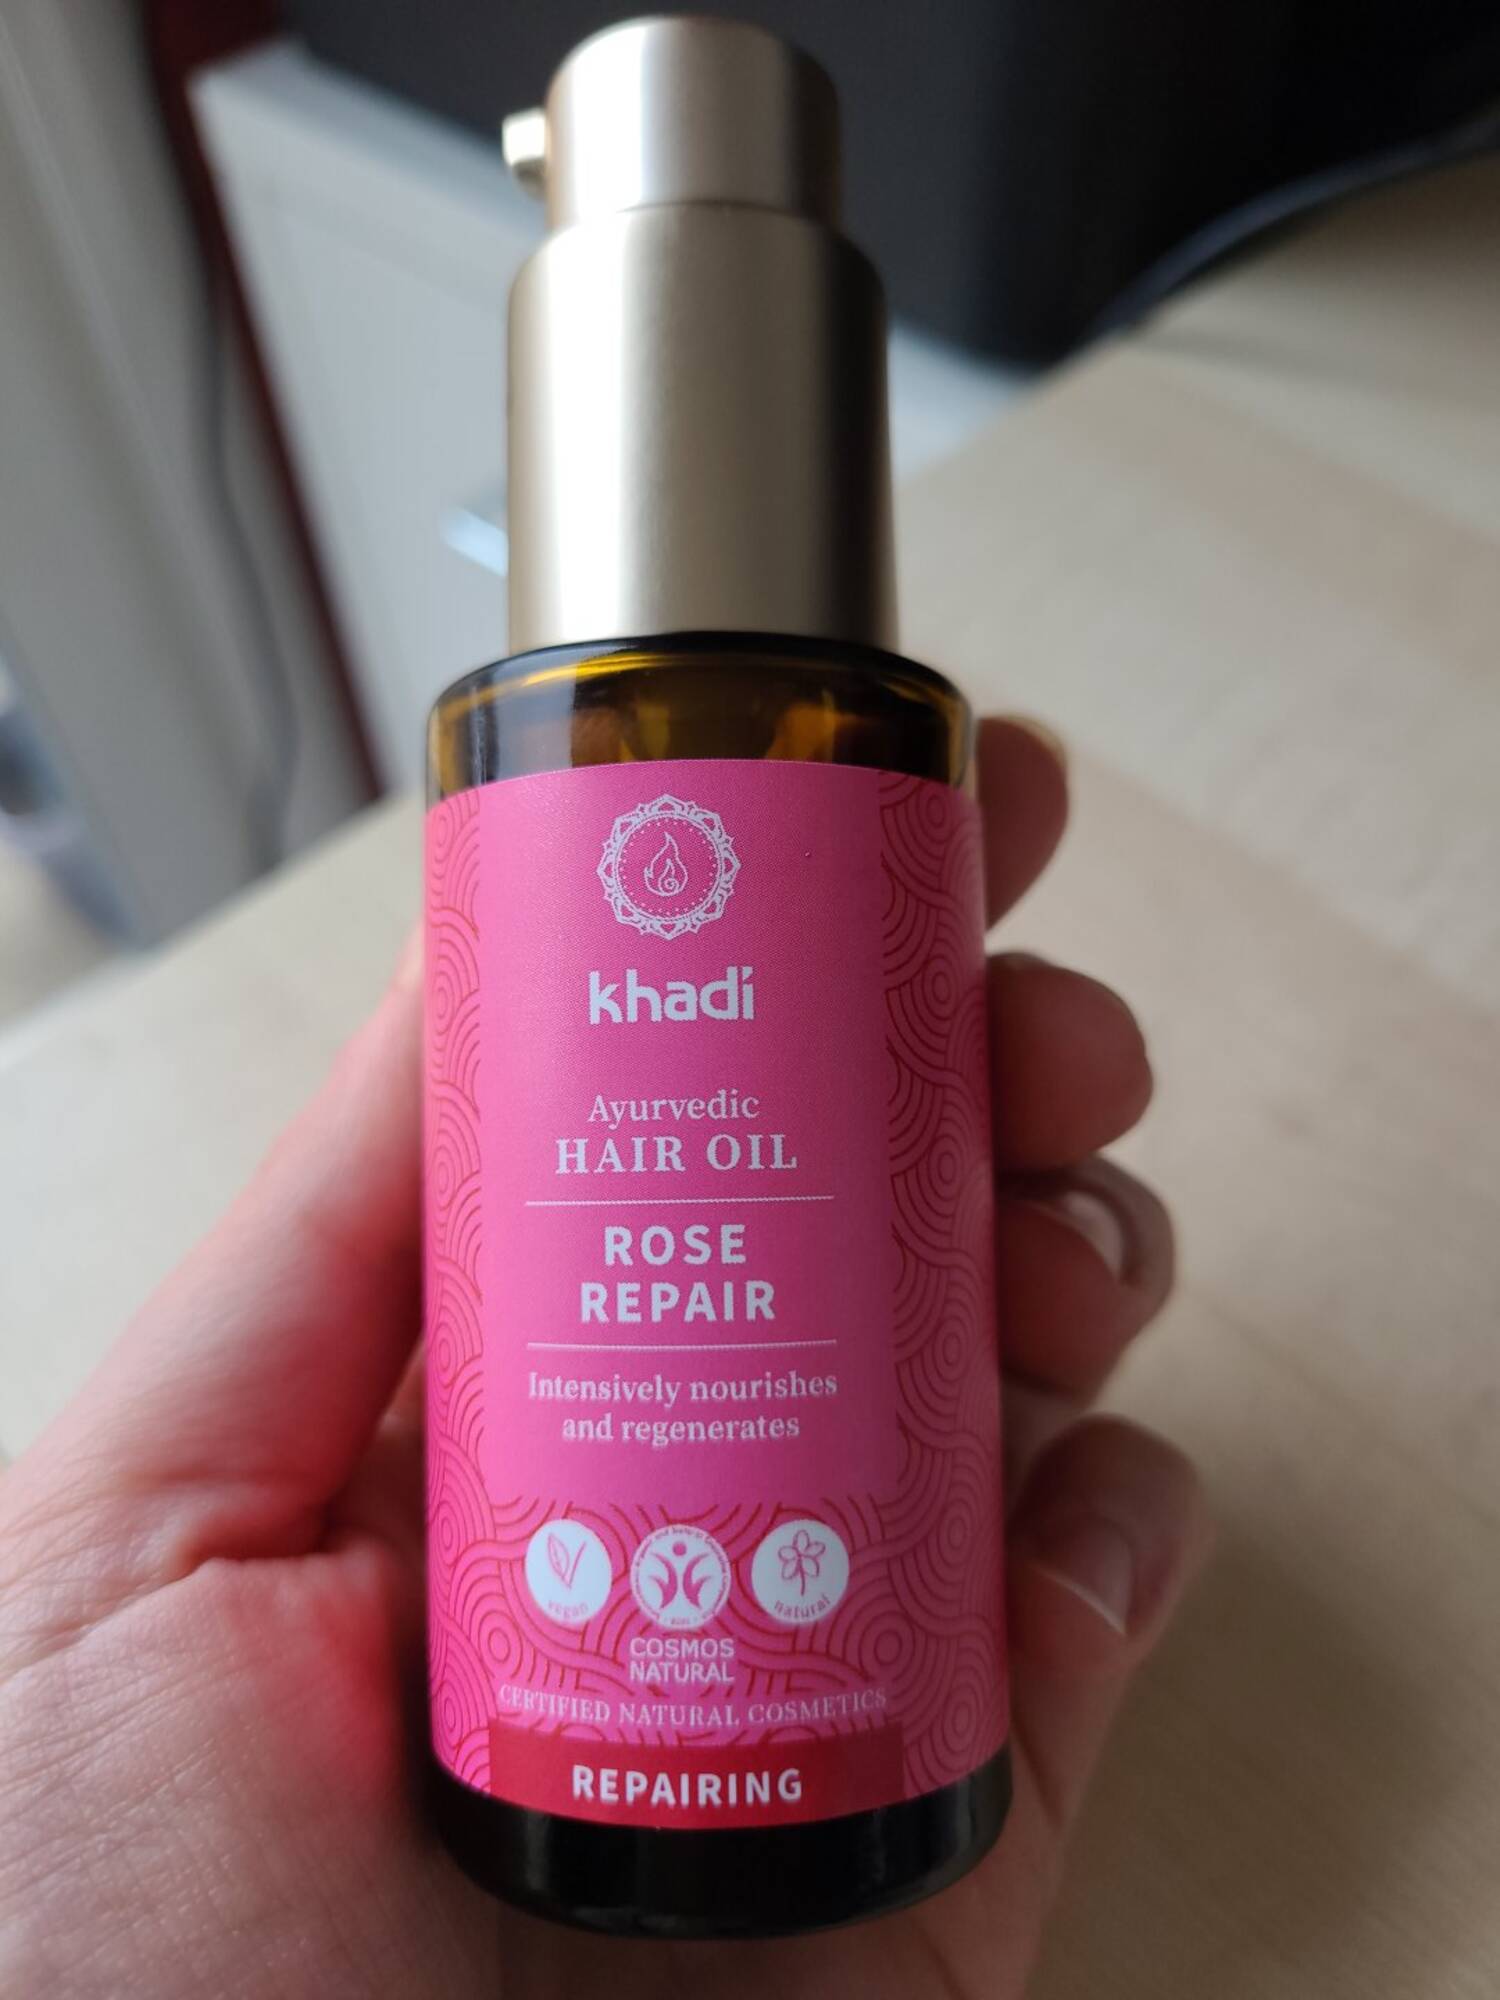 KHADI - Rose repair - Ayurvedic hair oil